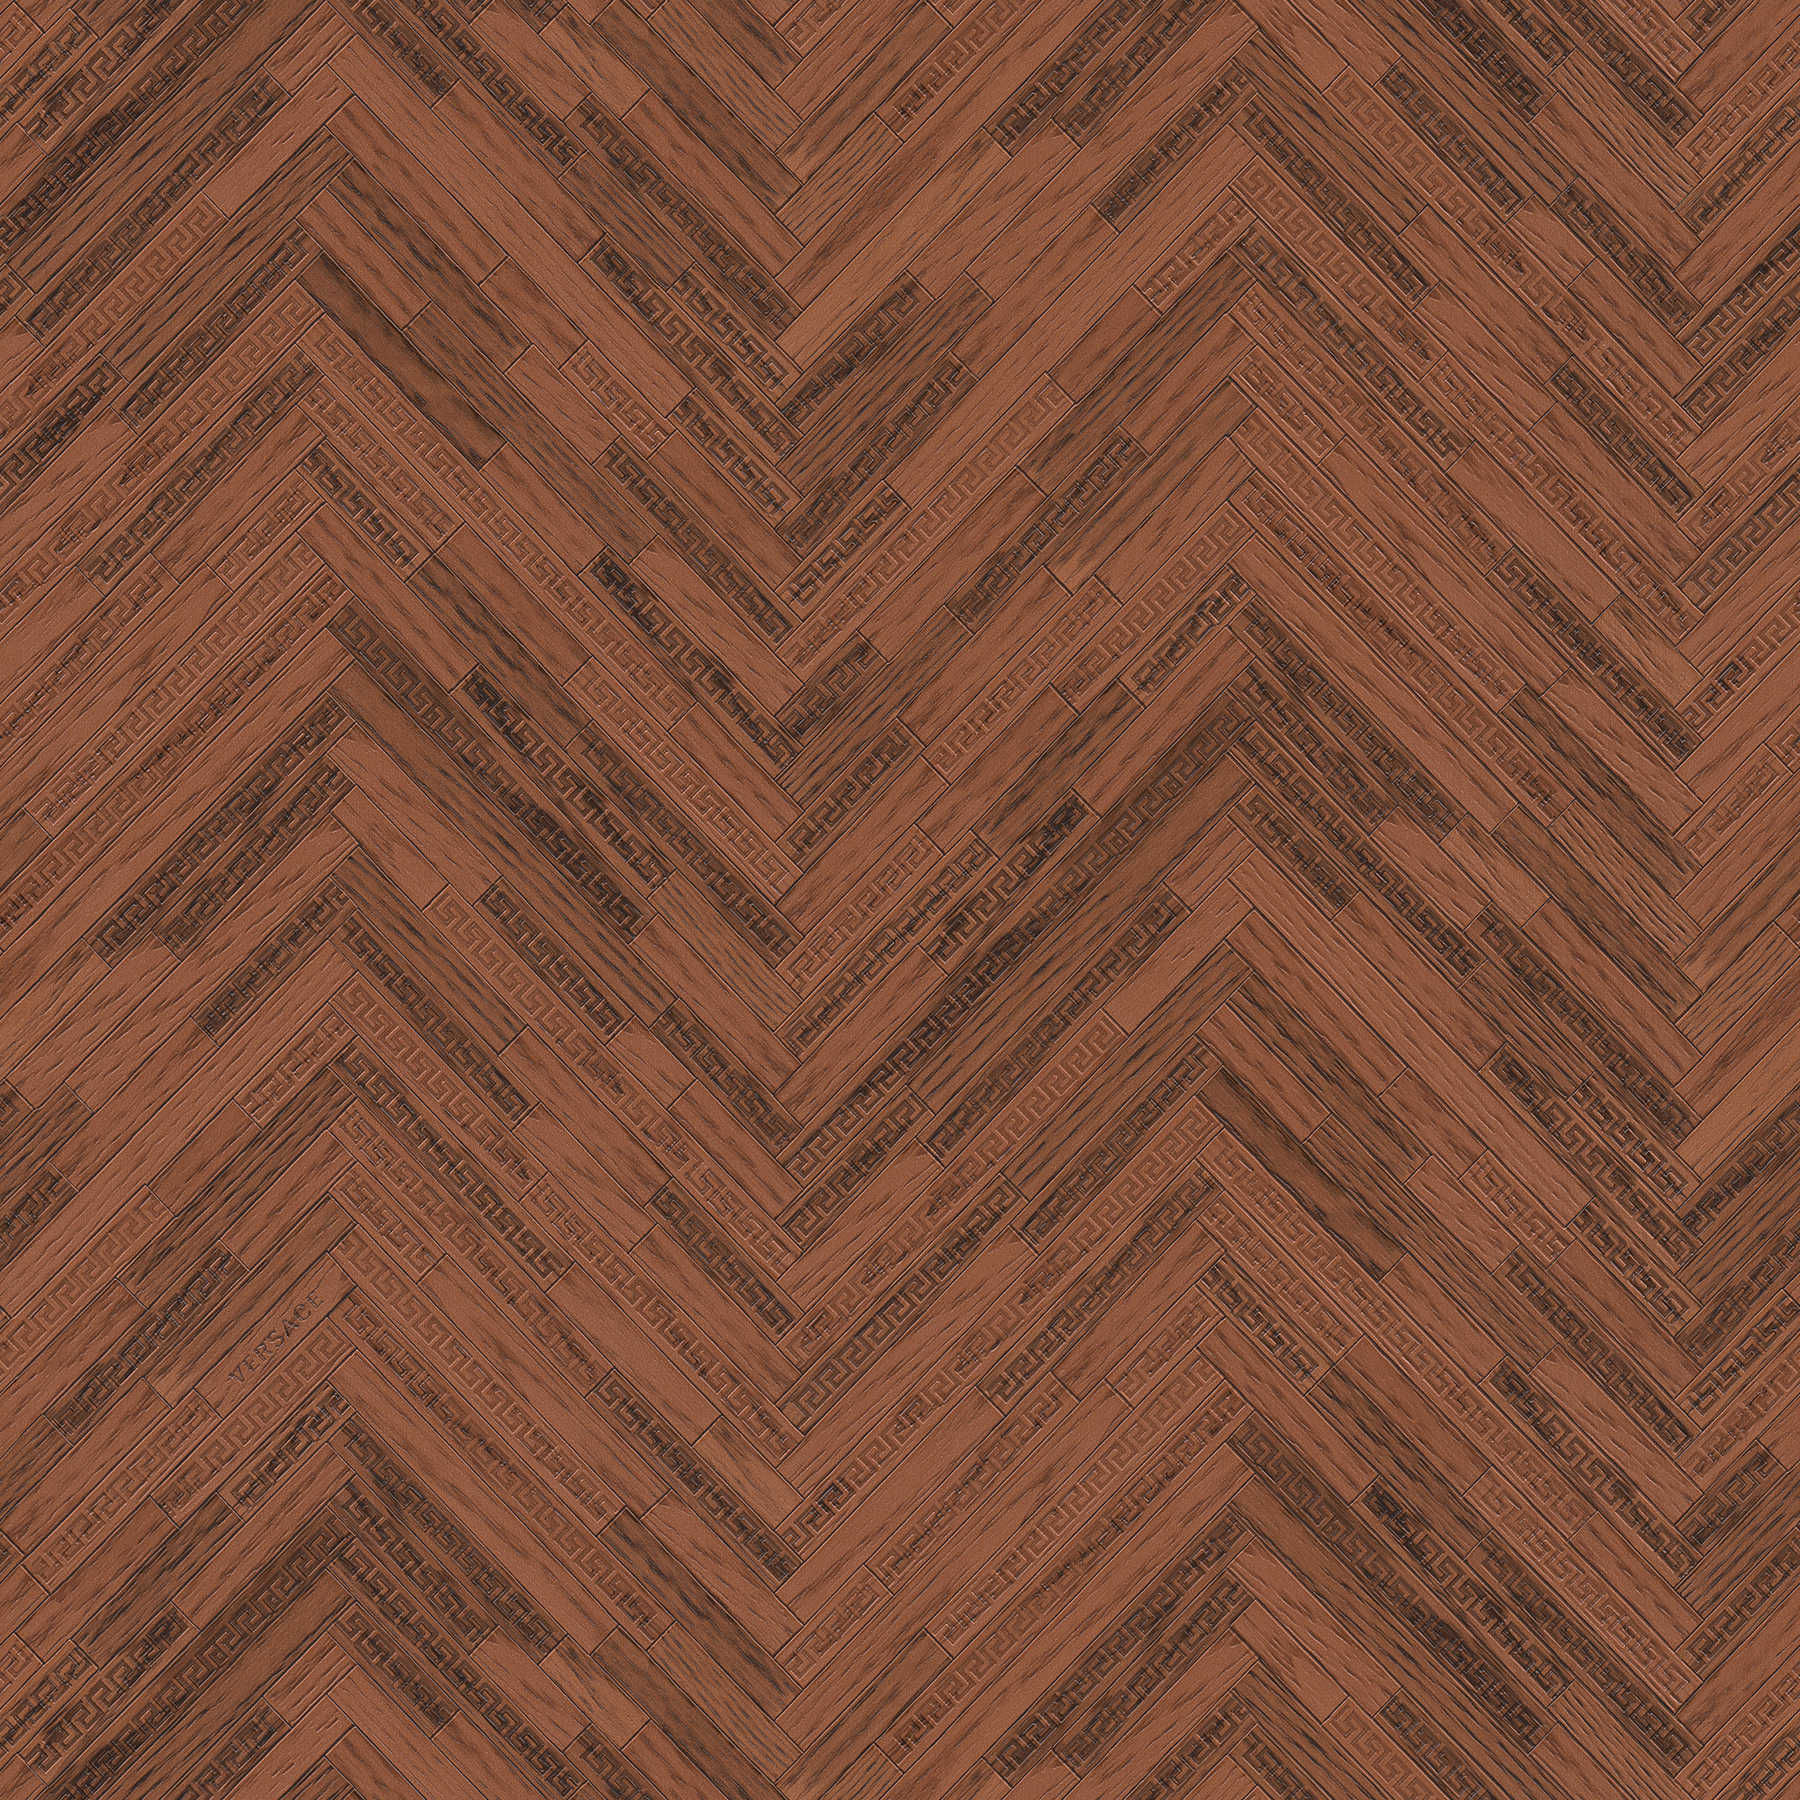 VERSACE Home wallpaper elegant wood look - brown, copper, red
